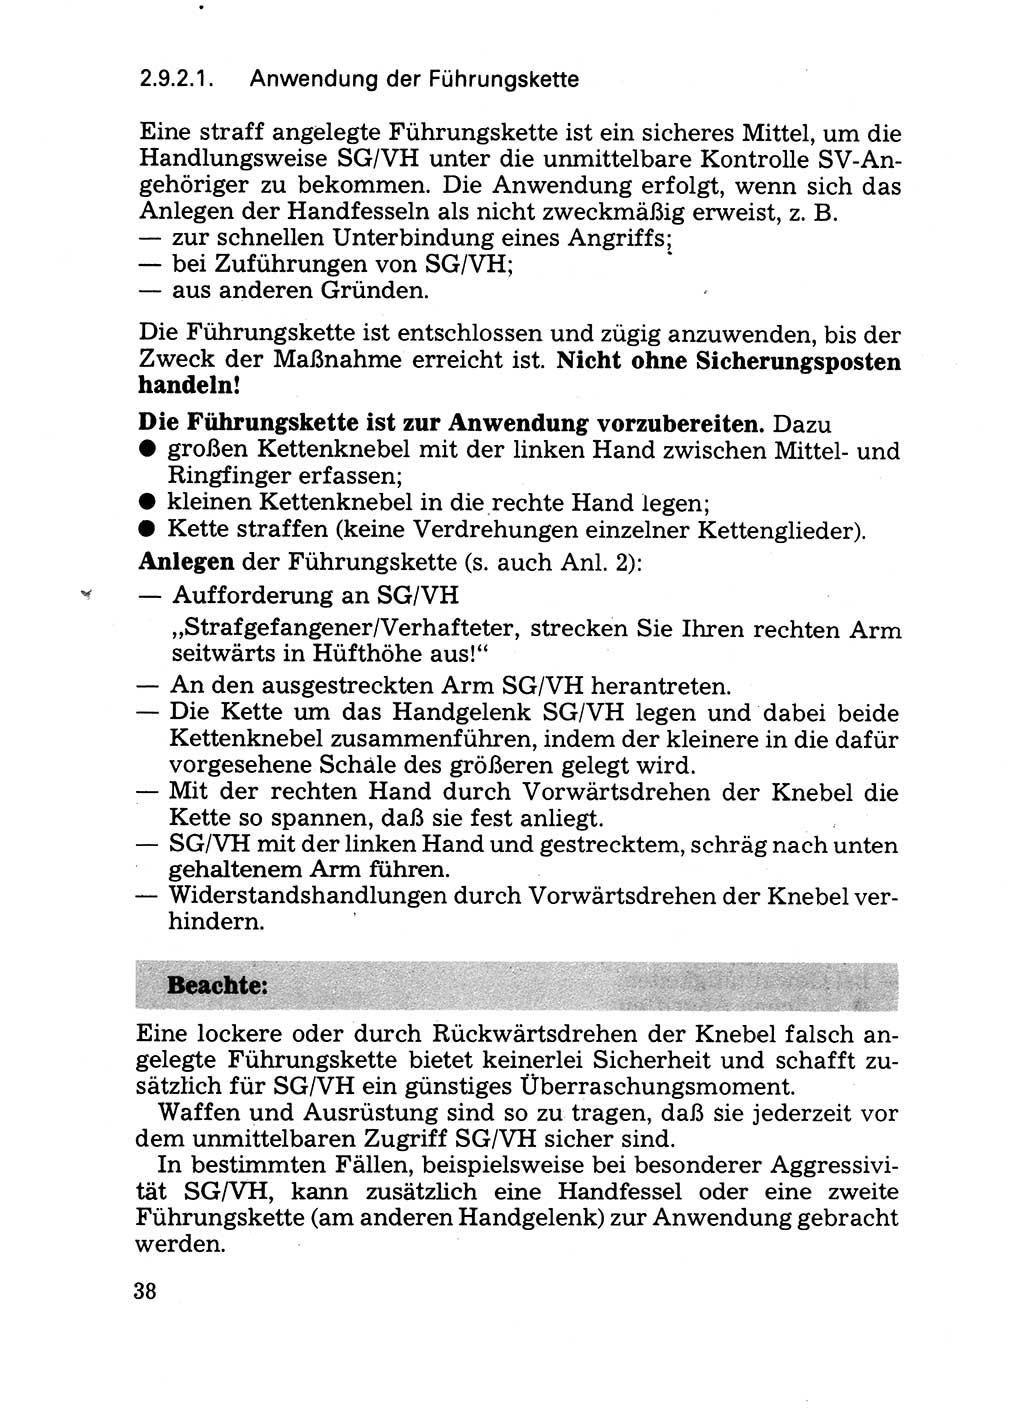 Handbuch für operative Dienste, Abteilung Strafvollzug (SV) [Ministerium des Innern (MdI) Deutsche Demokratische Republik (DDR)] 1981, Seite 38 (Hb. op. D. Abt. SV MdI DDR 1981, S. 38)